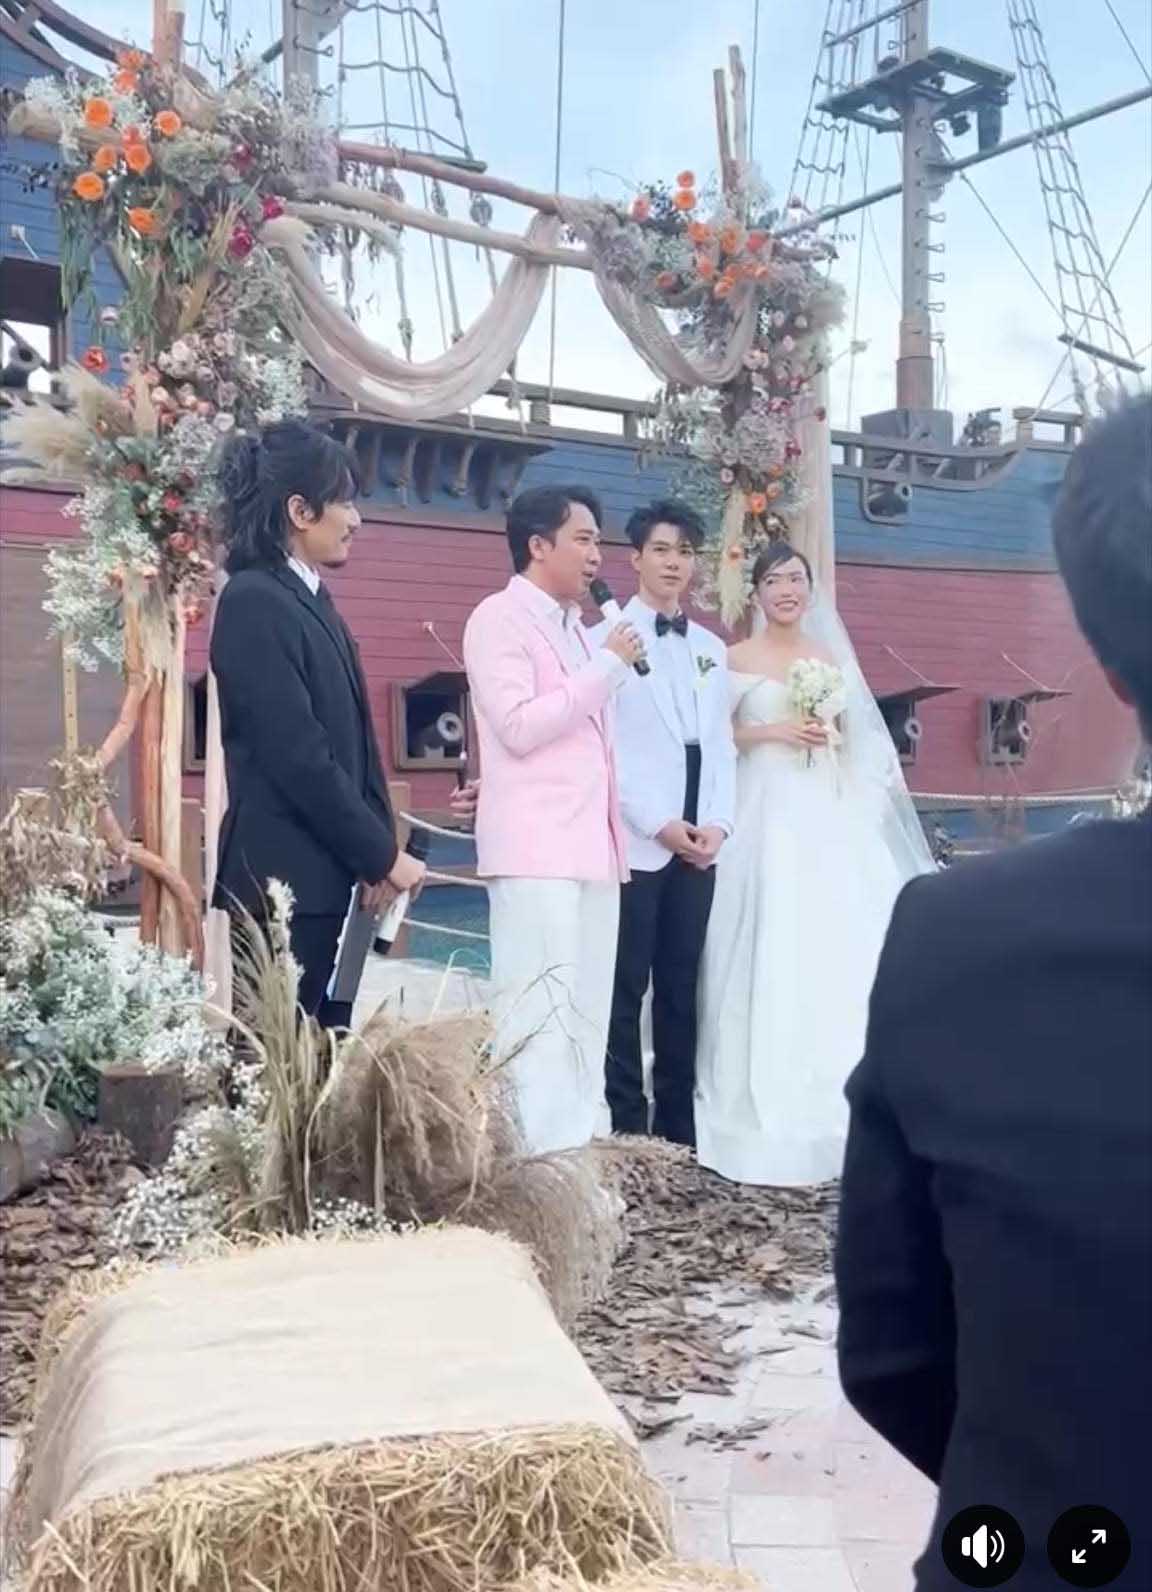 Kiều Minh Tuấn hoang dã như “cướp biển” tại đám cưới Diệu Nhi, tiết lộ mức cát-xê làm MC dẫn cưới cho đàn em - Ảnh 2